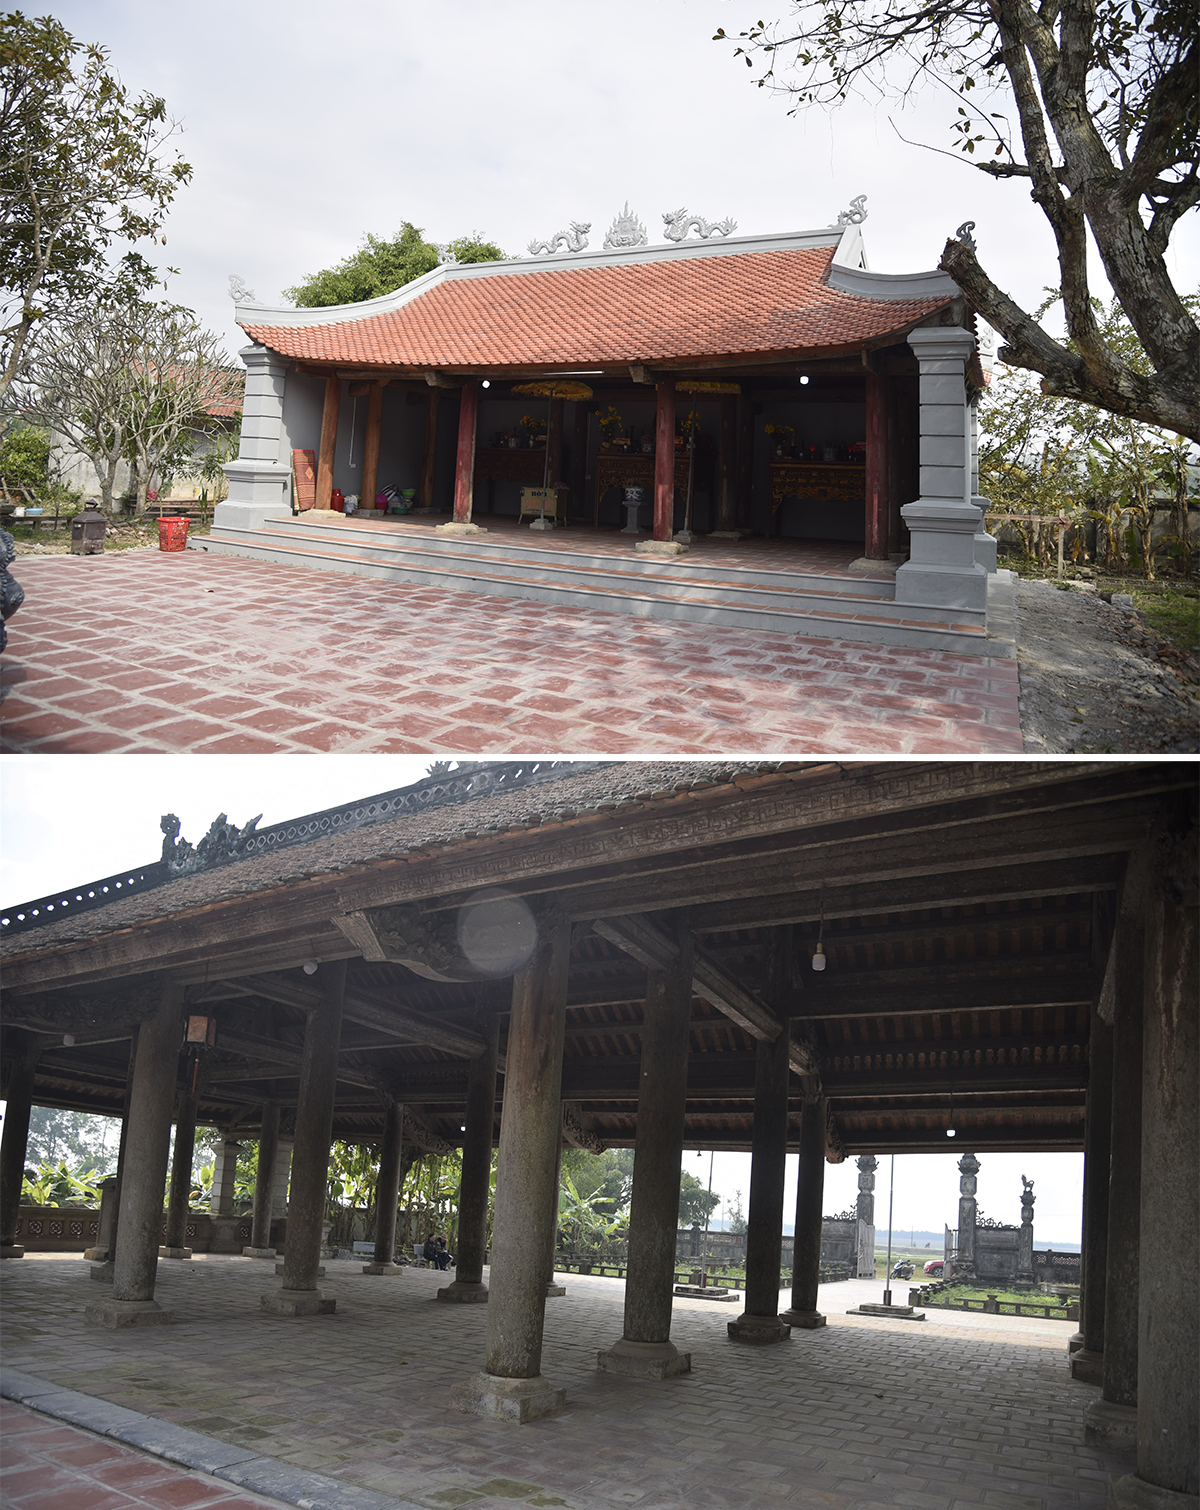 Đình Sừng ở xã Lăng Thành (Yên Thành) được sửa chữa, xây mới thượng điện (ảnh trên), đối lập với sự xuống cấp ở hạ điện. Ảnh: M.Q